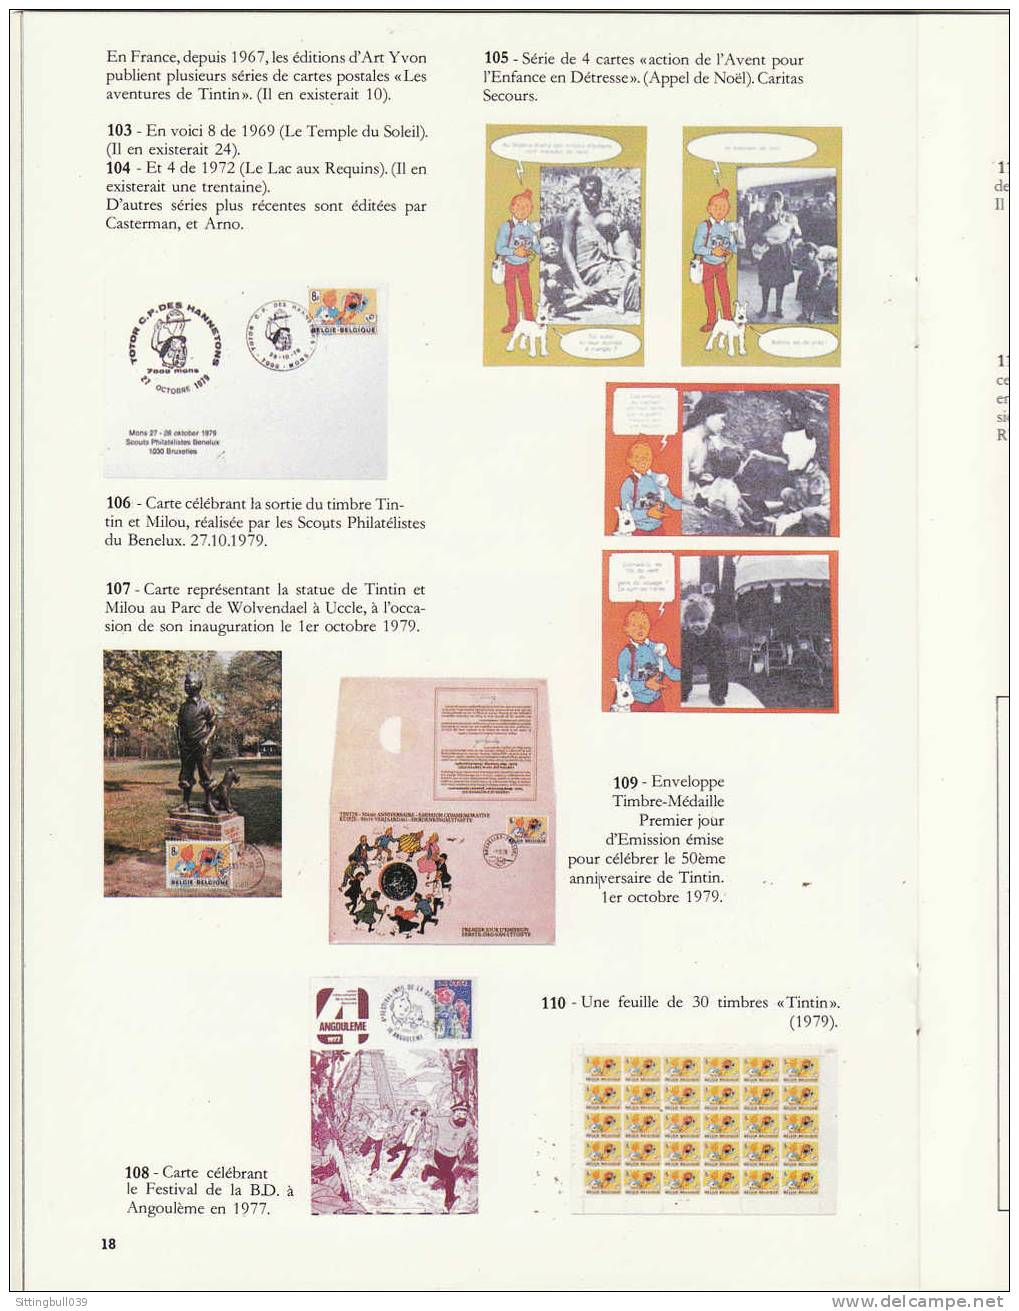 L´UNIVERS d´Hergé. Catalogue de la Collection unique de STEEMAN. 1983. TL 2000 EX. RARE  ! Une réf. pour les Tintinistes